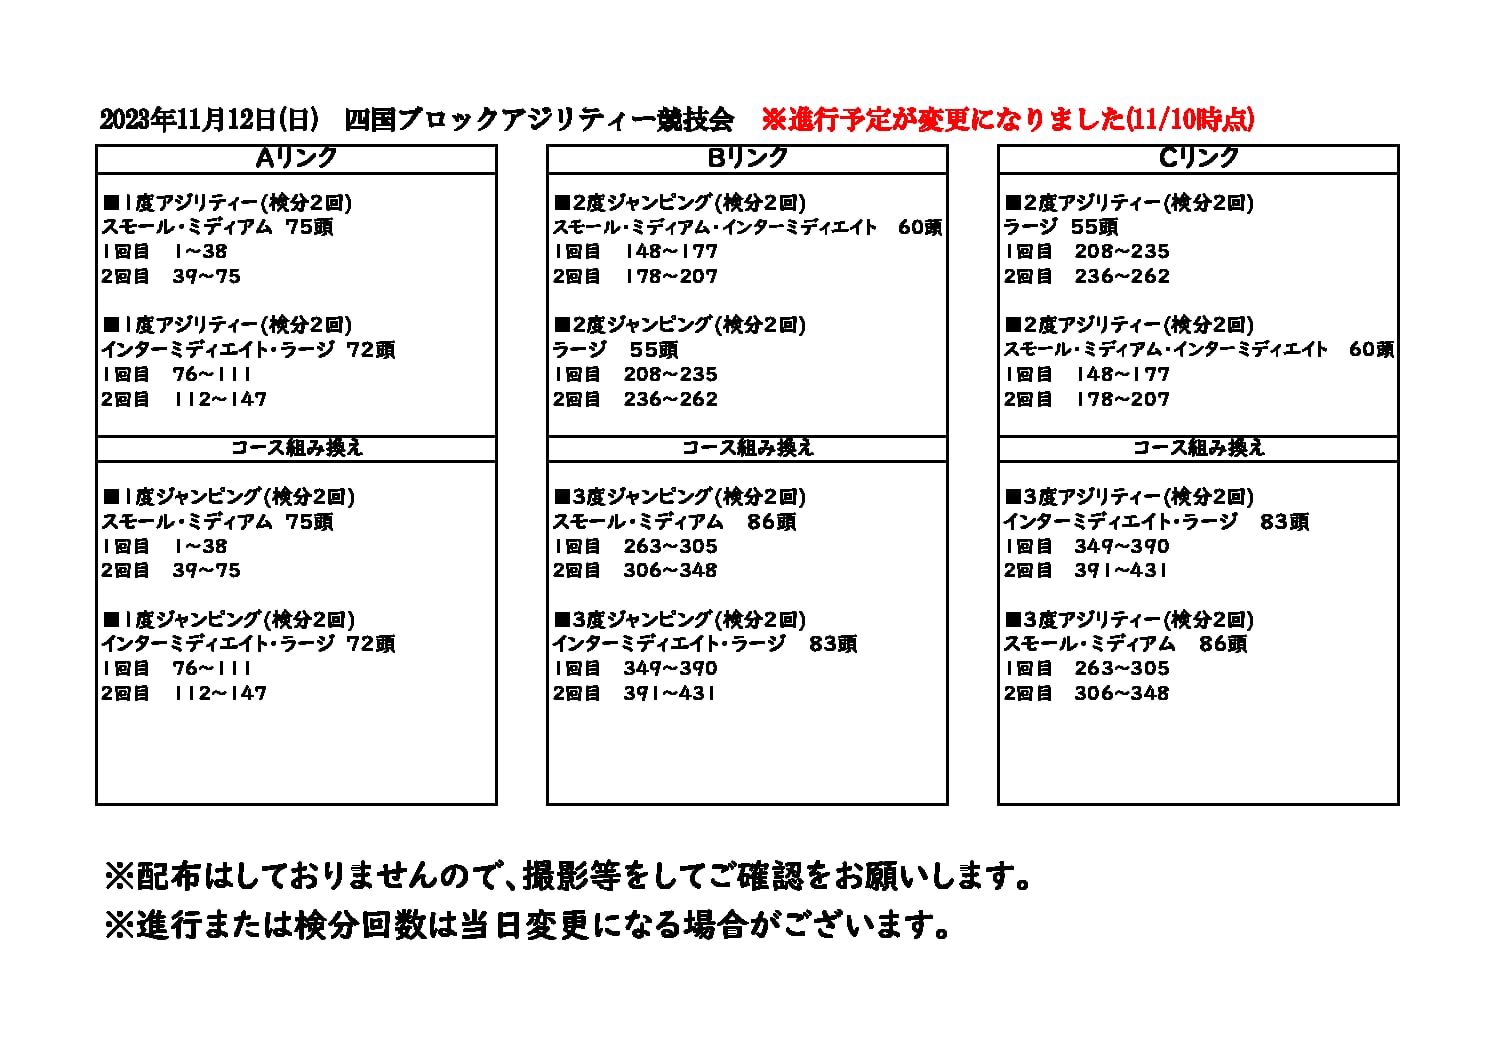 【重要】11/12(日)四国ブロックアジリティー競技会進行予定表変更について